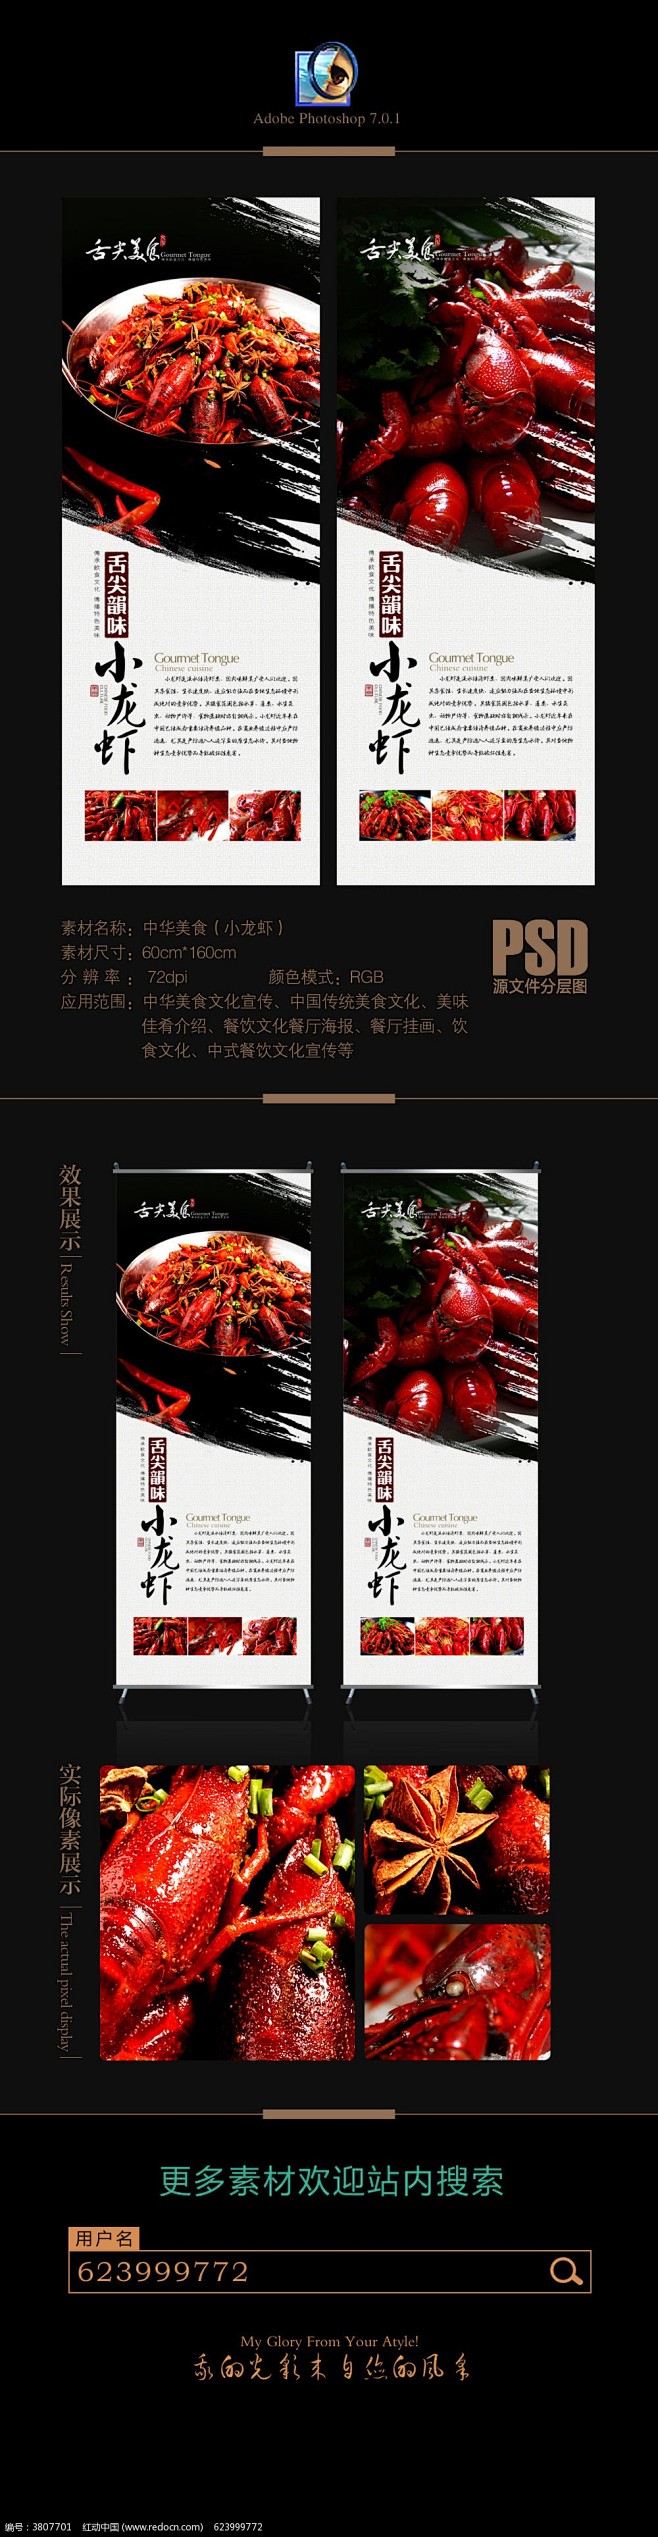 中国美食小龙虾文化X展架宣传图片